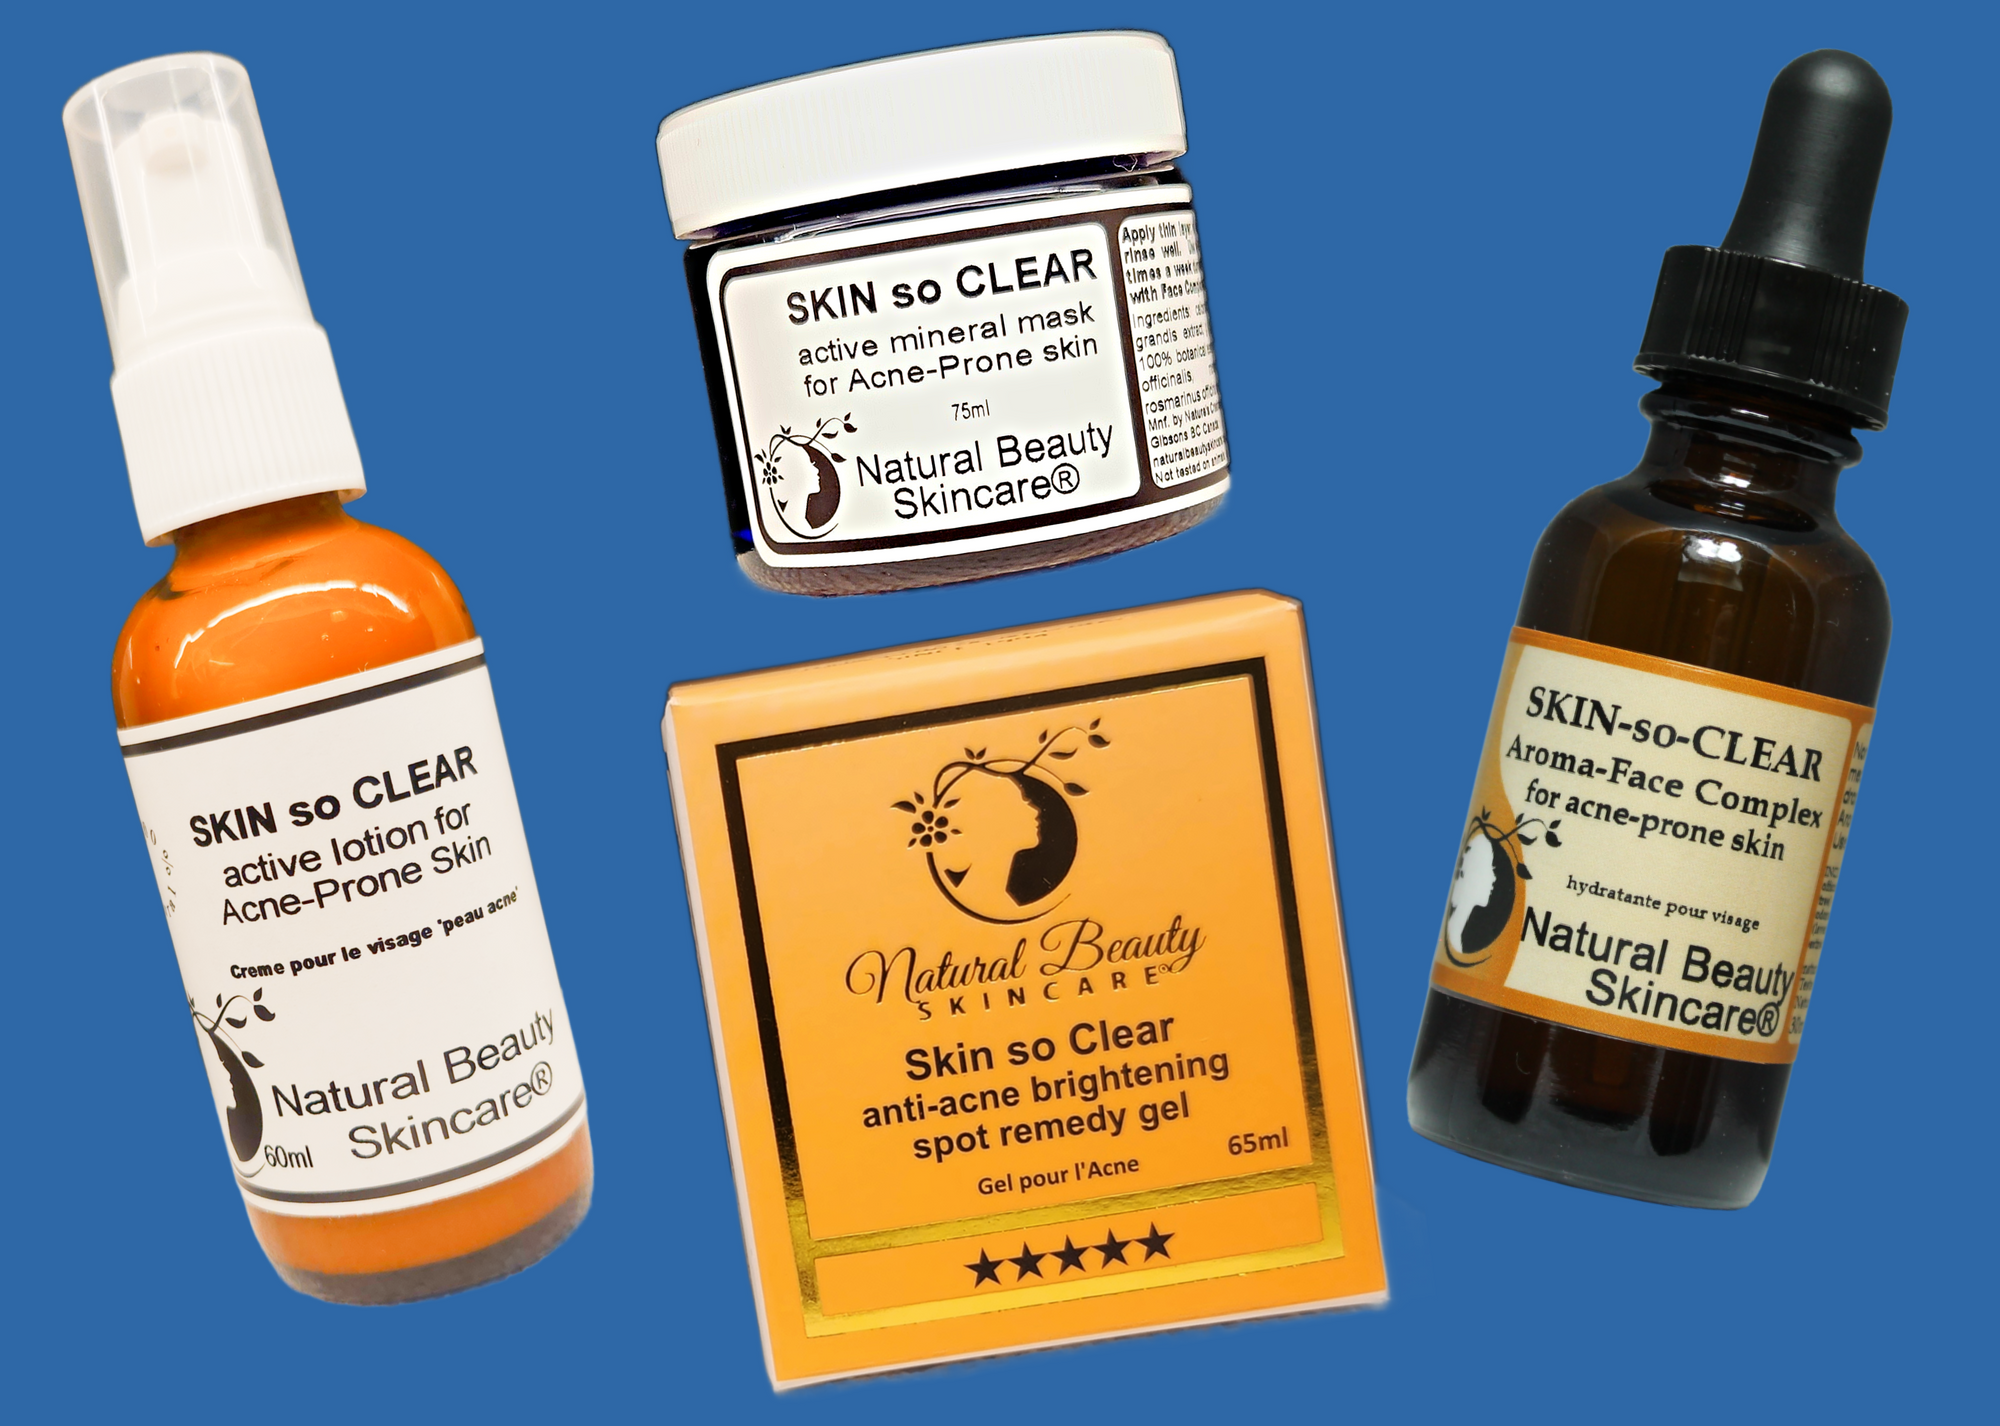 Skin-so-Clear™ for Clear Skin!